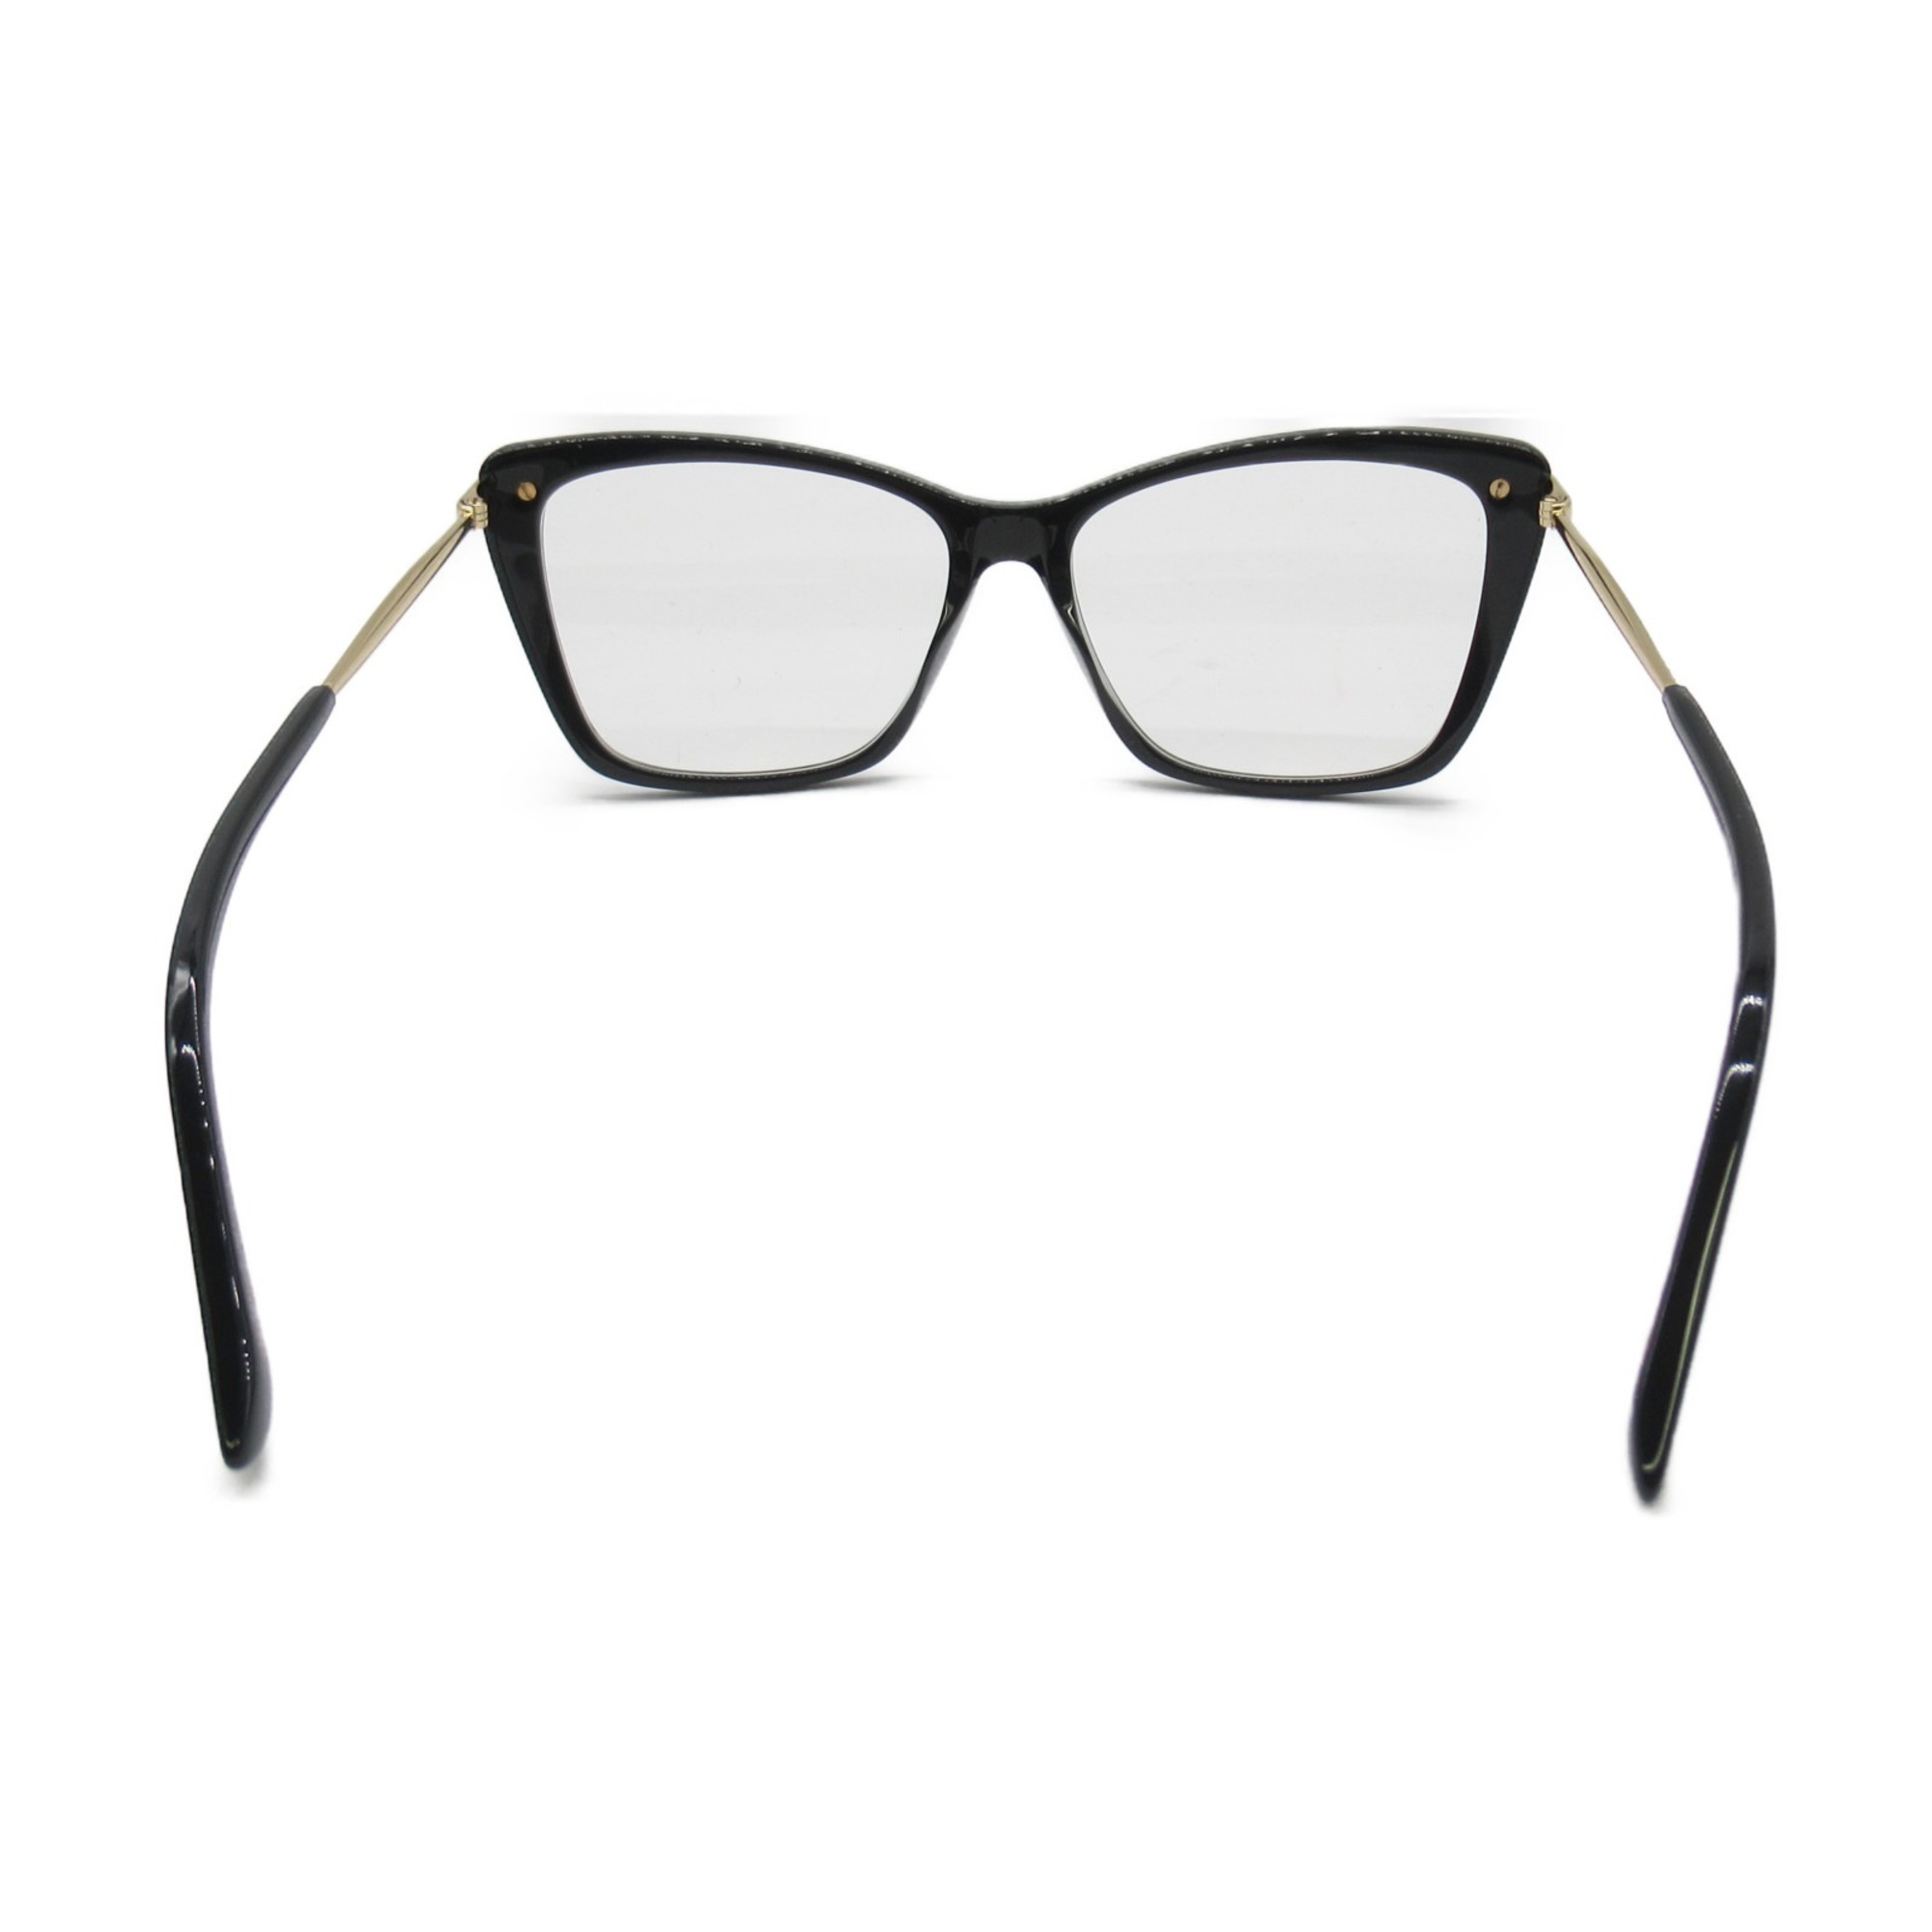 JIMMY CHOO Date Glasses Glasses Frame Black Stainless Steel Plastic 297 807(54)